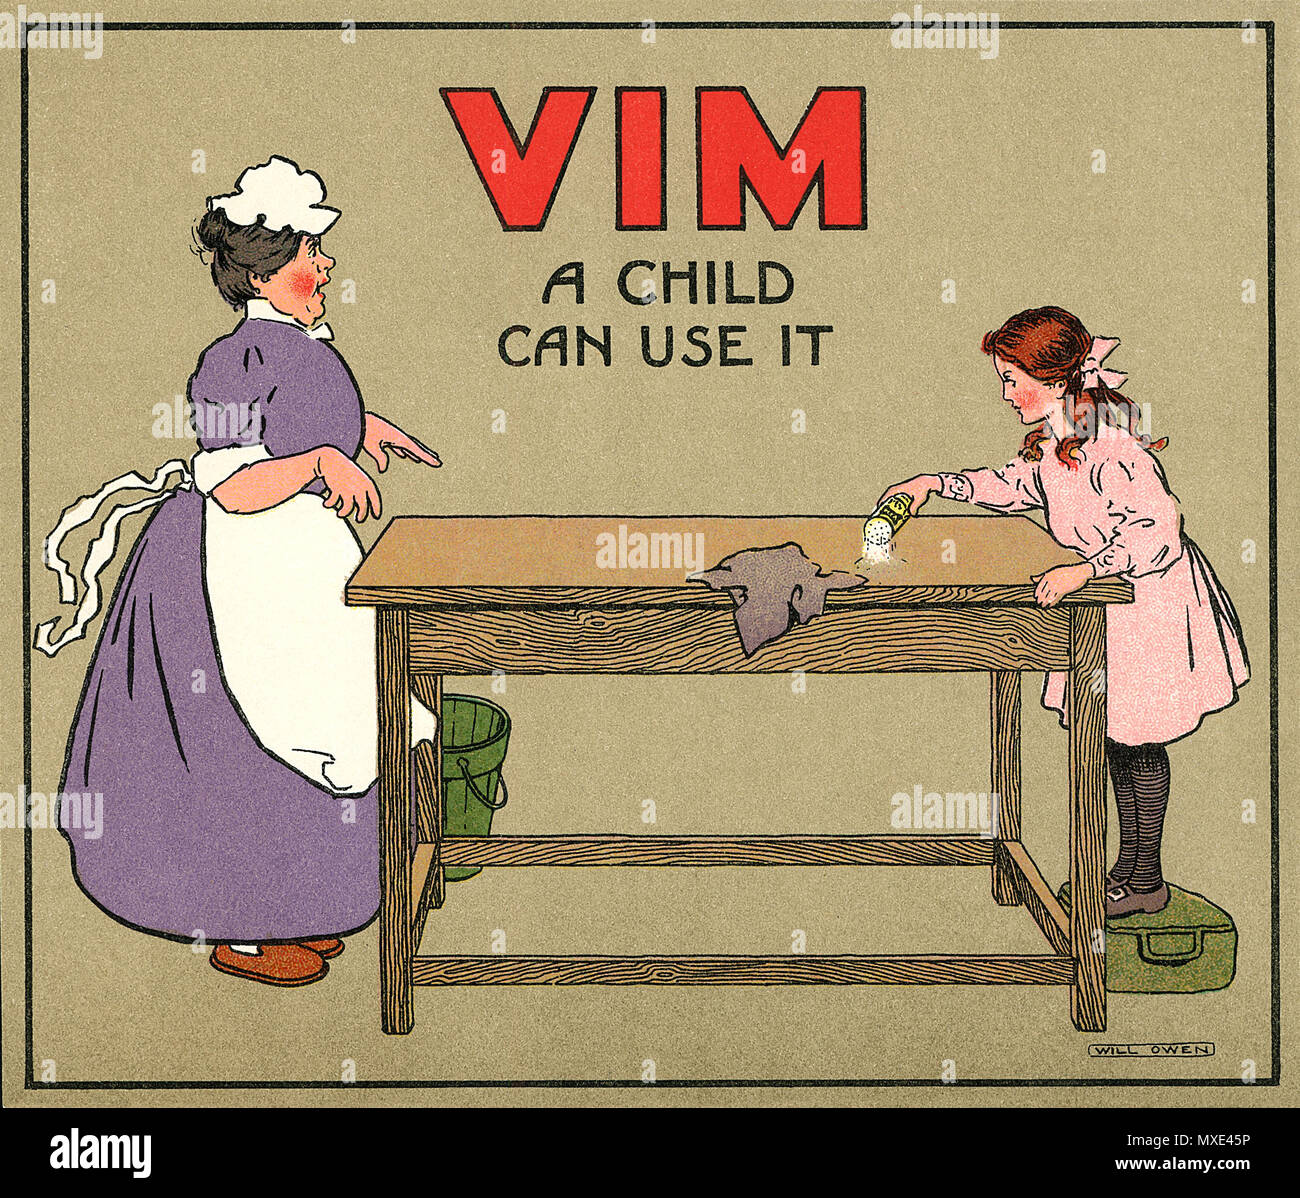 Vintage promotional Magazin ein für VIM-Haushaltsreiniger, illustriert von wird Owen. Stockfoto